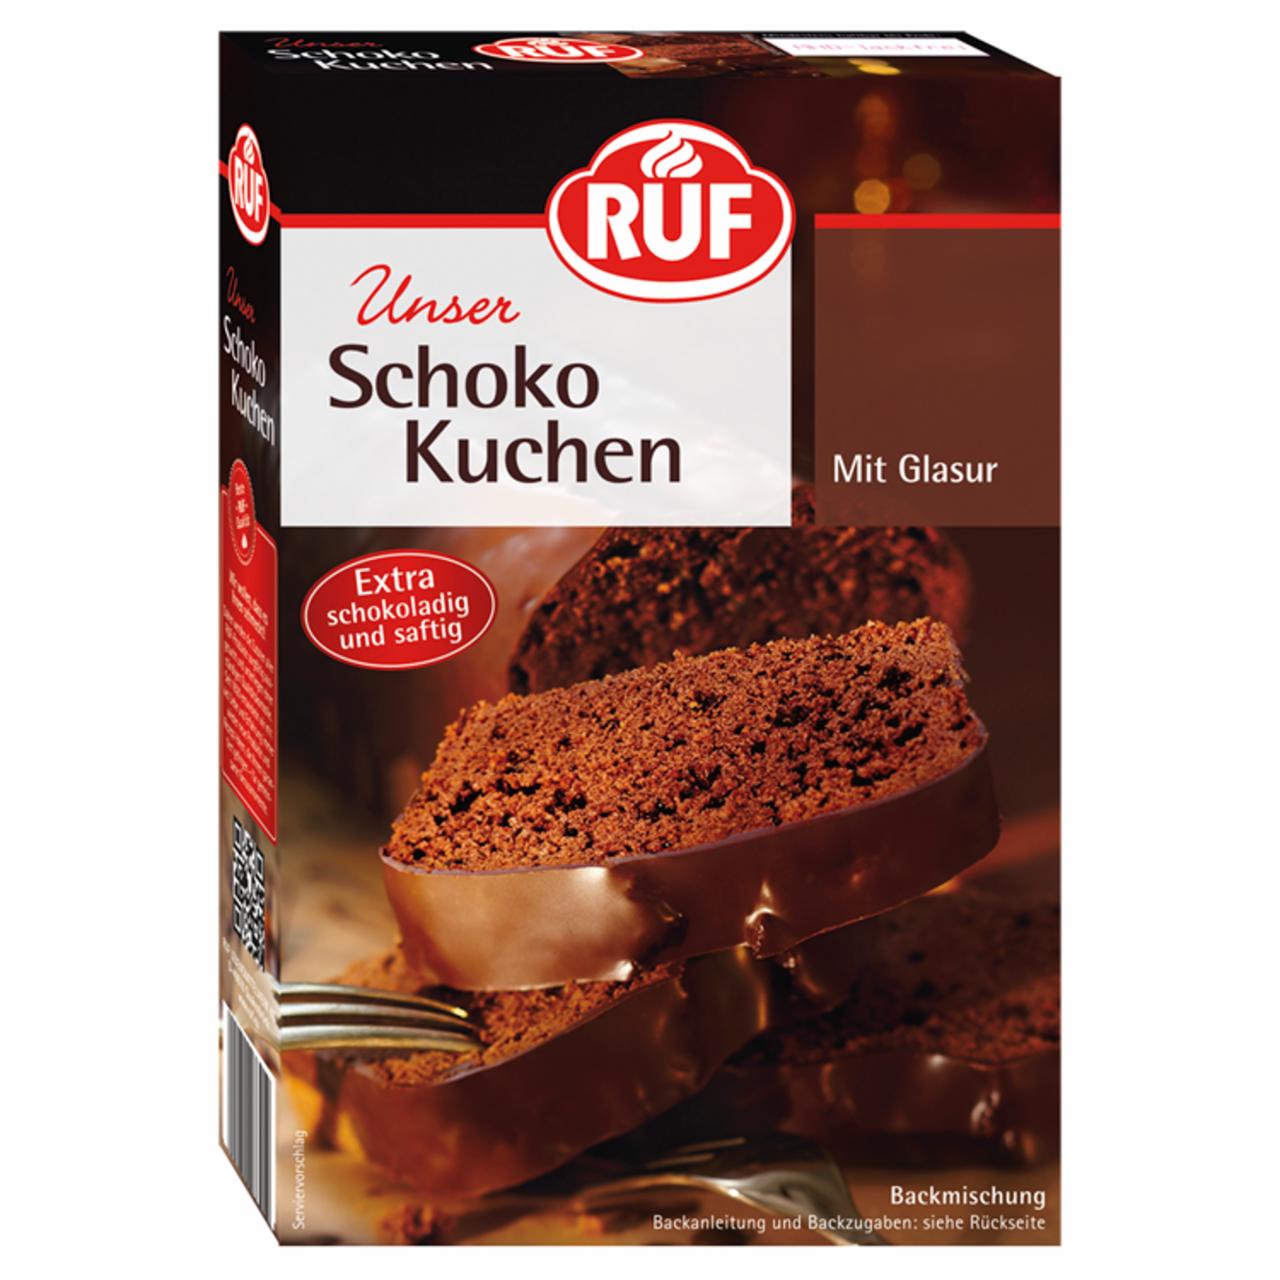 Képek - RUF csokoládés süteményalap csoki bevonattal 475 g